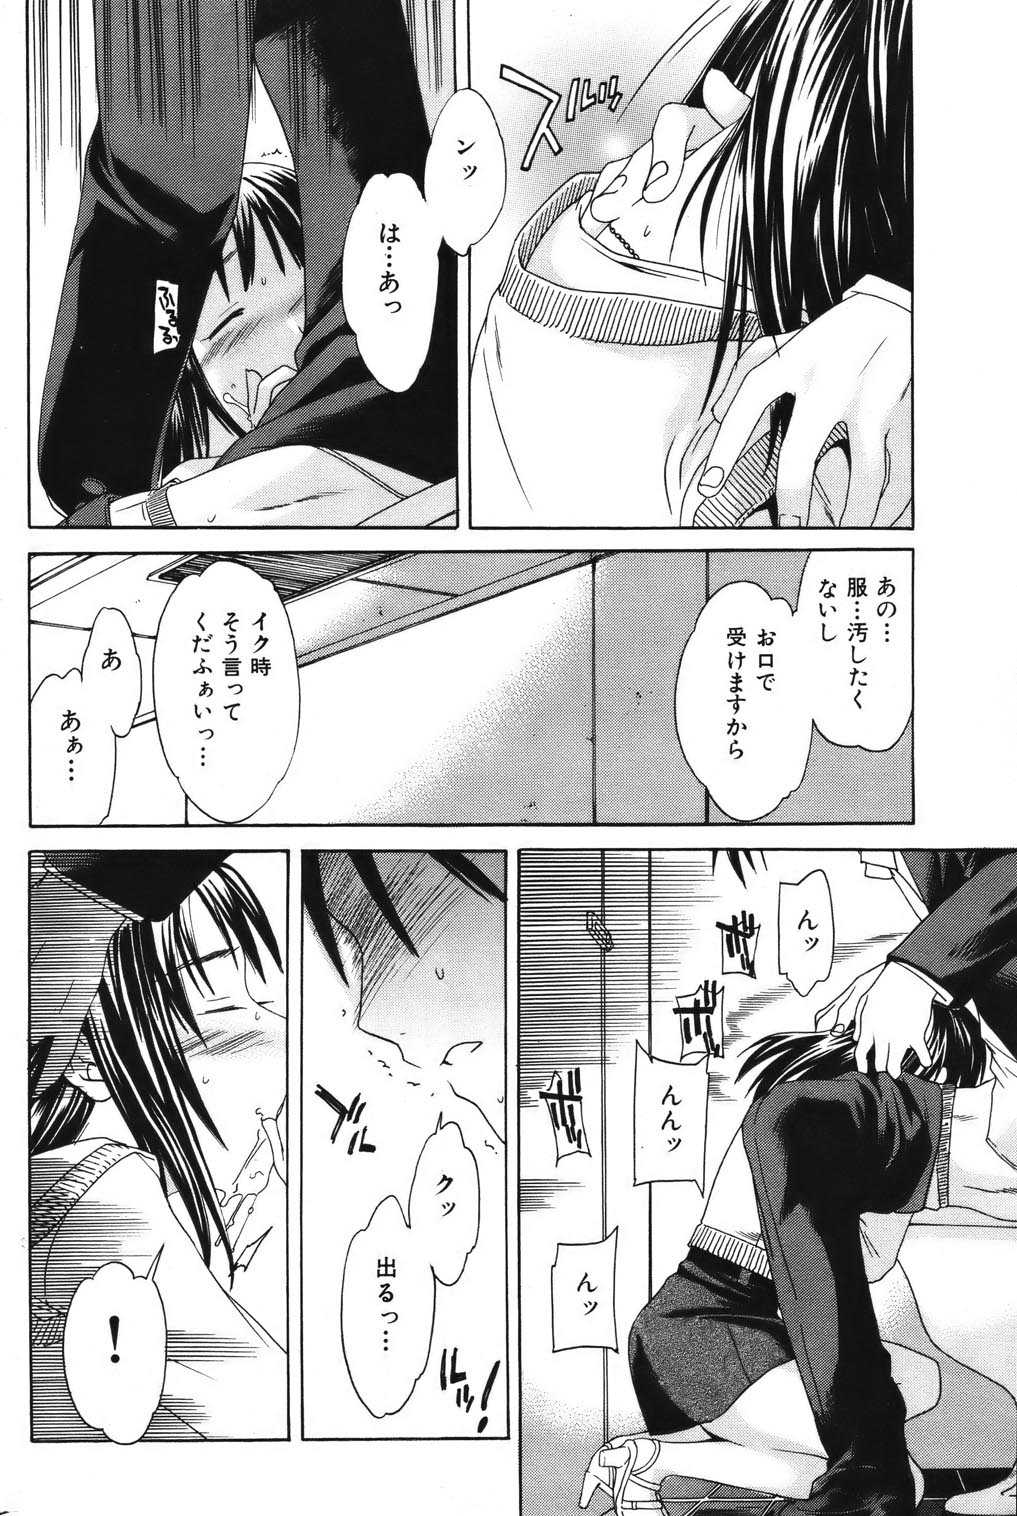 [2006.02.15]Comic Kairakuten Beast Volume 6 